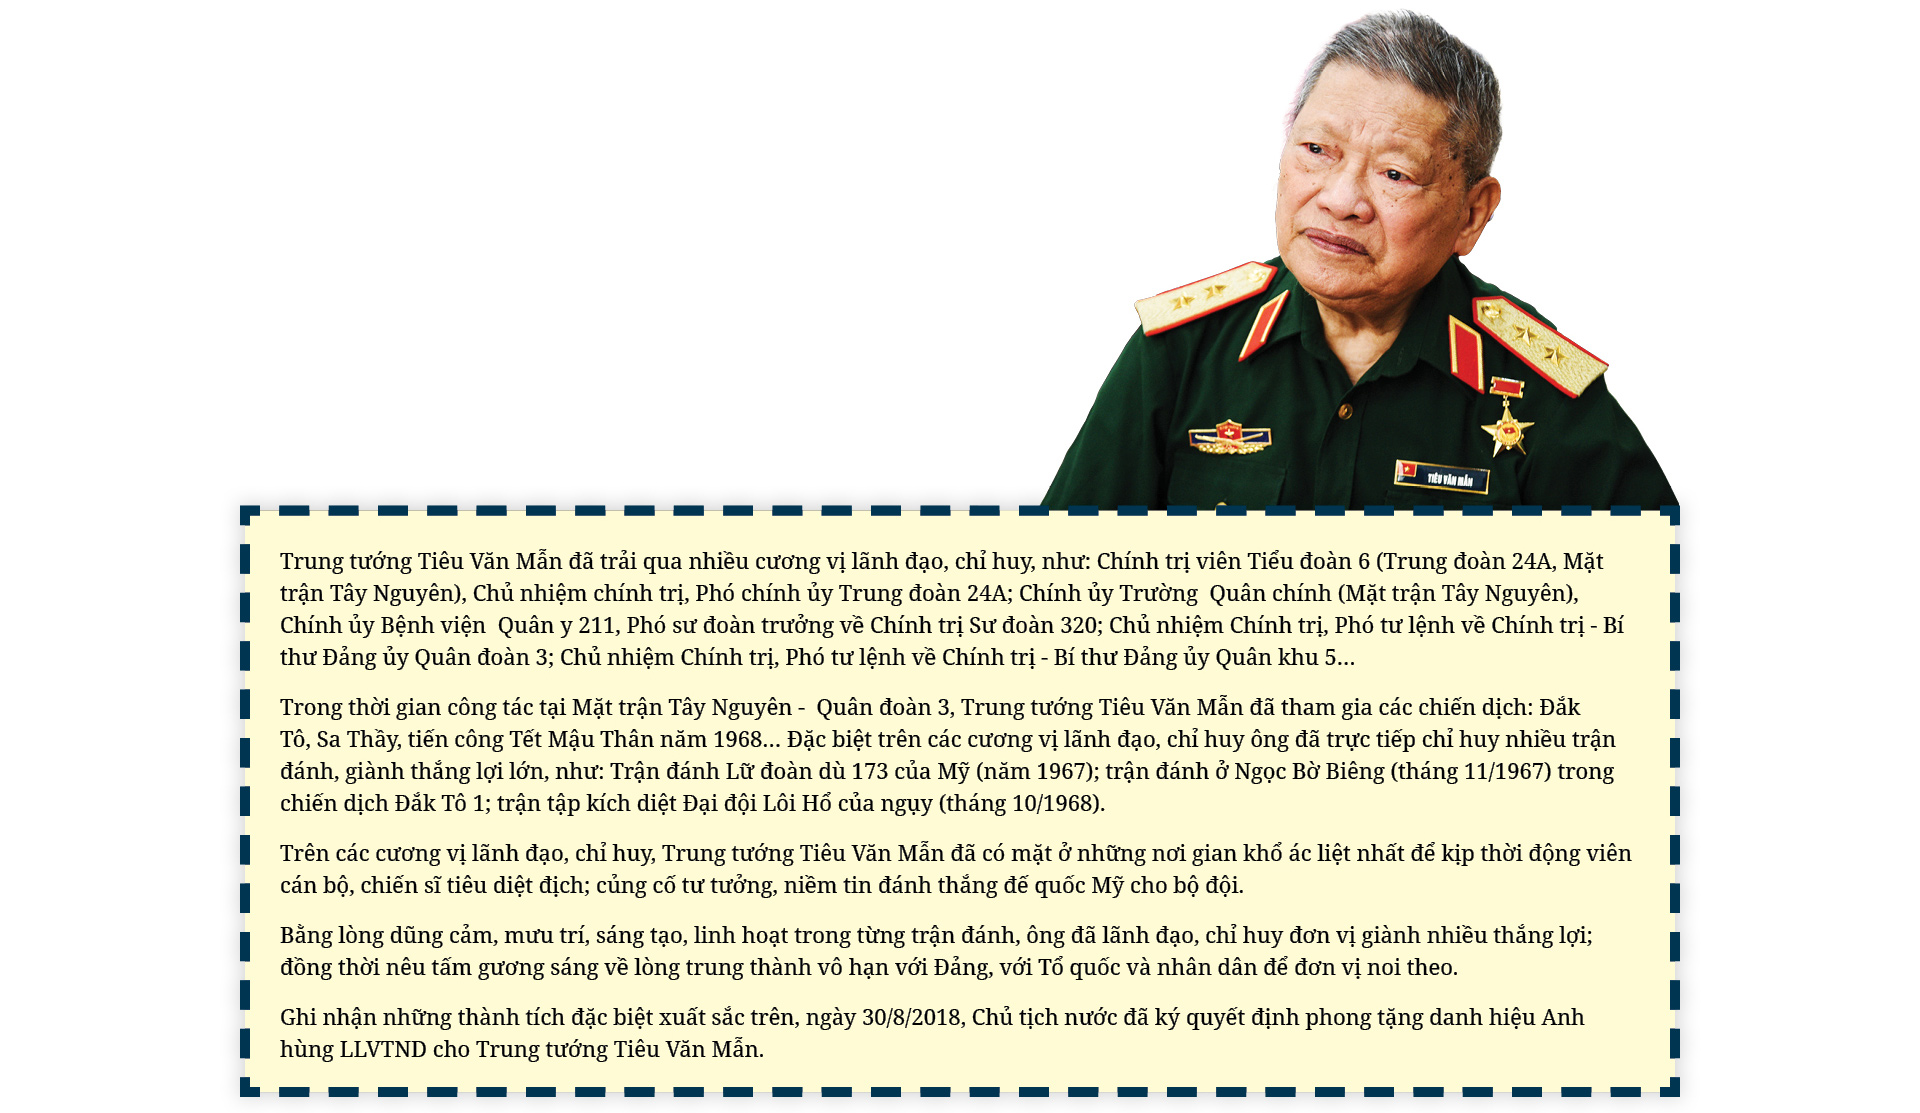 Anh hùng LLVTND, Trung tướng Tiêu Văn Mẫn: Dấu ấn để đời của vị tướng trong cuộc đời binh nghiệp thời chiến và thời bình - Ảnh 12.